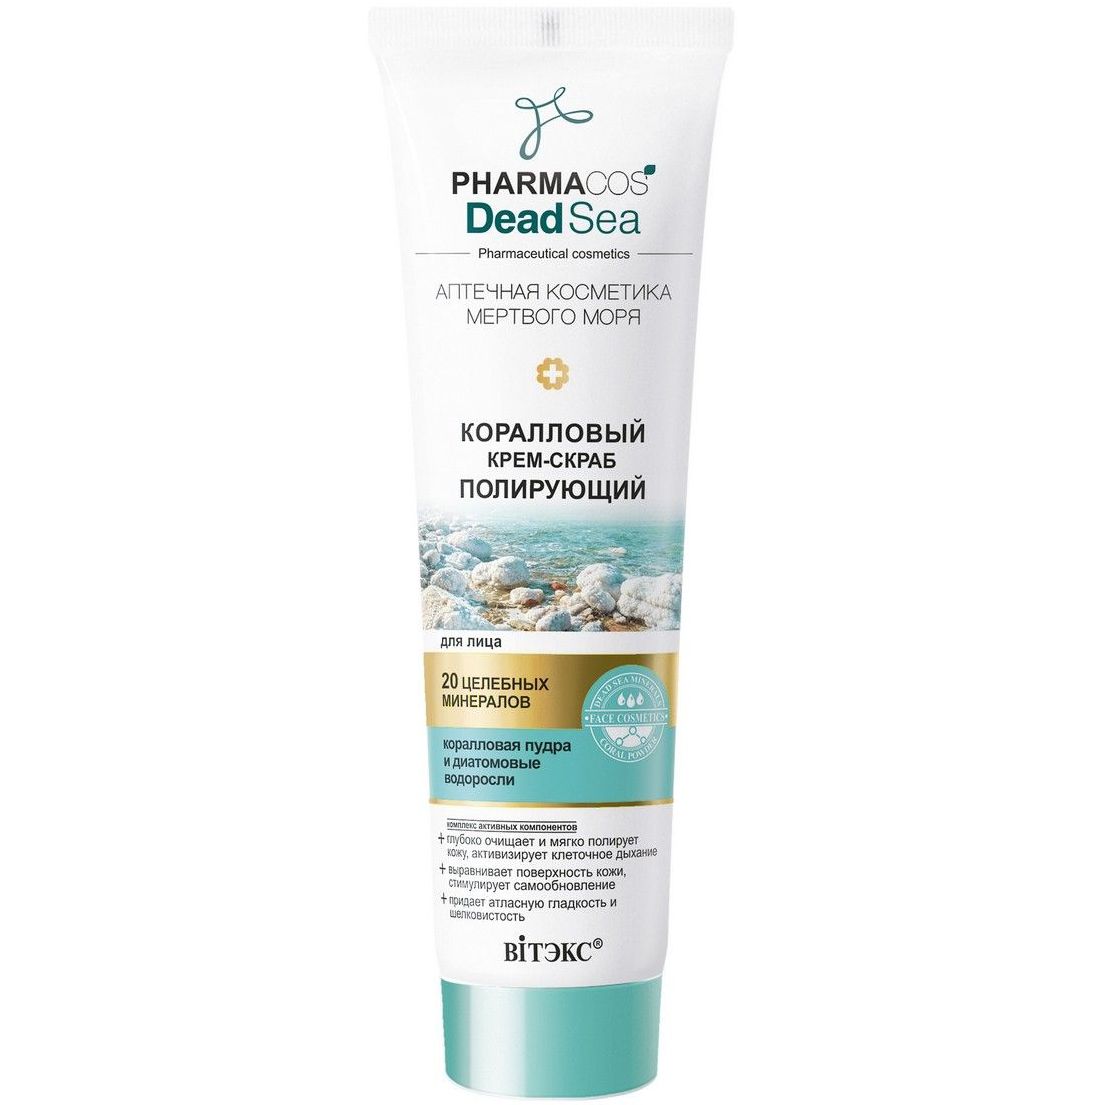 Купить крем беларусь. Витэкс Pharmacos Dead Sea крем-Light. Pharmacos Dead Sea грязевая отшелушивающая маска для лица,75мл.. Витекс Pharmacos Dead Sea Oil-крем. Витэкс Pharmacos Dead Sea для сухой, очень сухой и атопичной кожи.